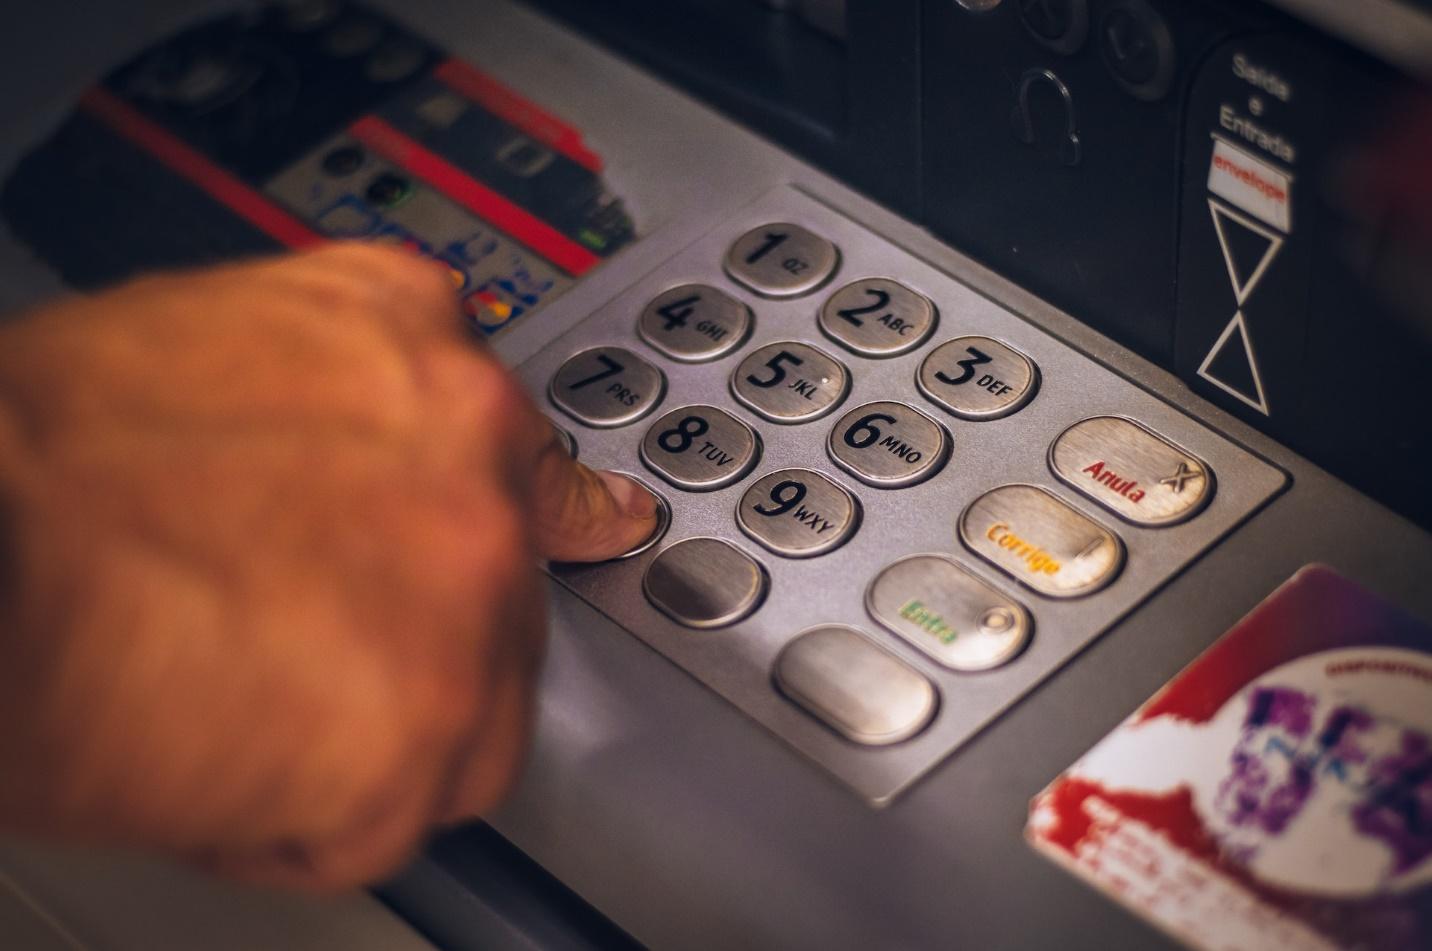 An ATM machine